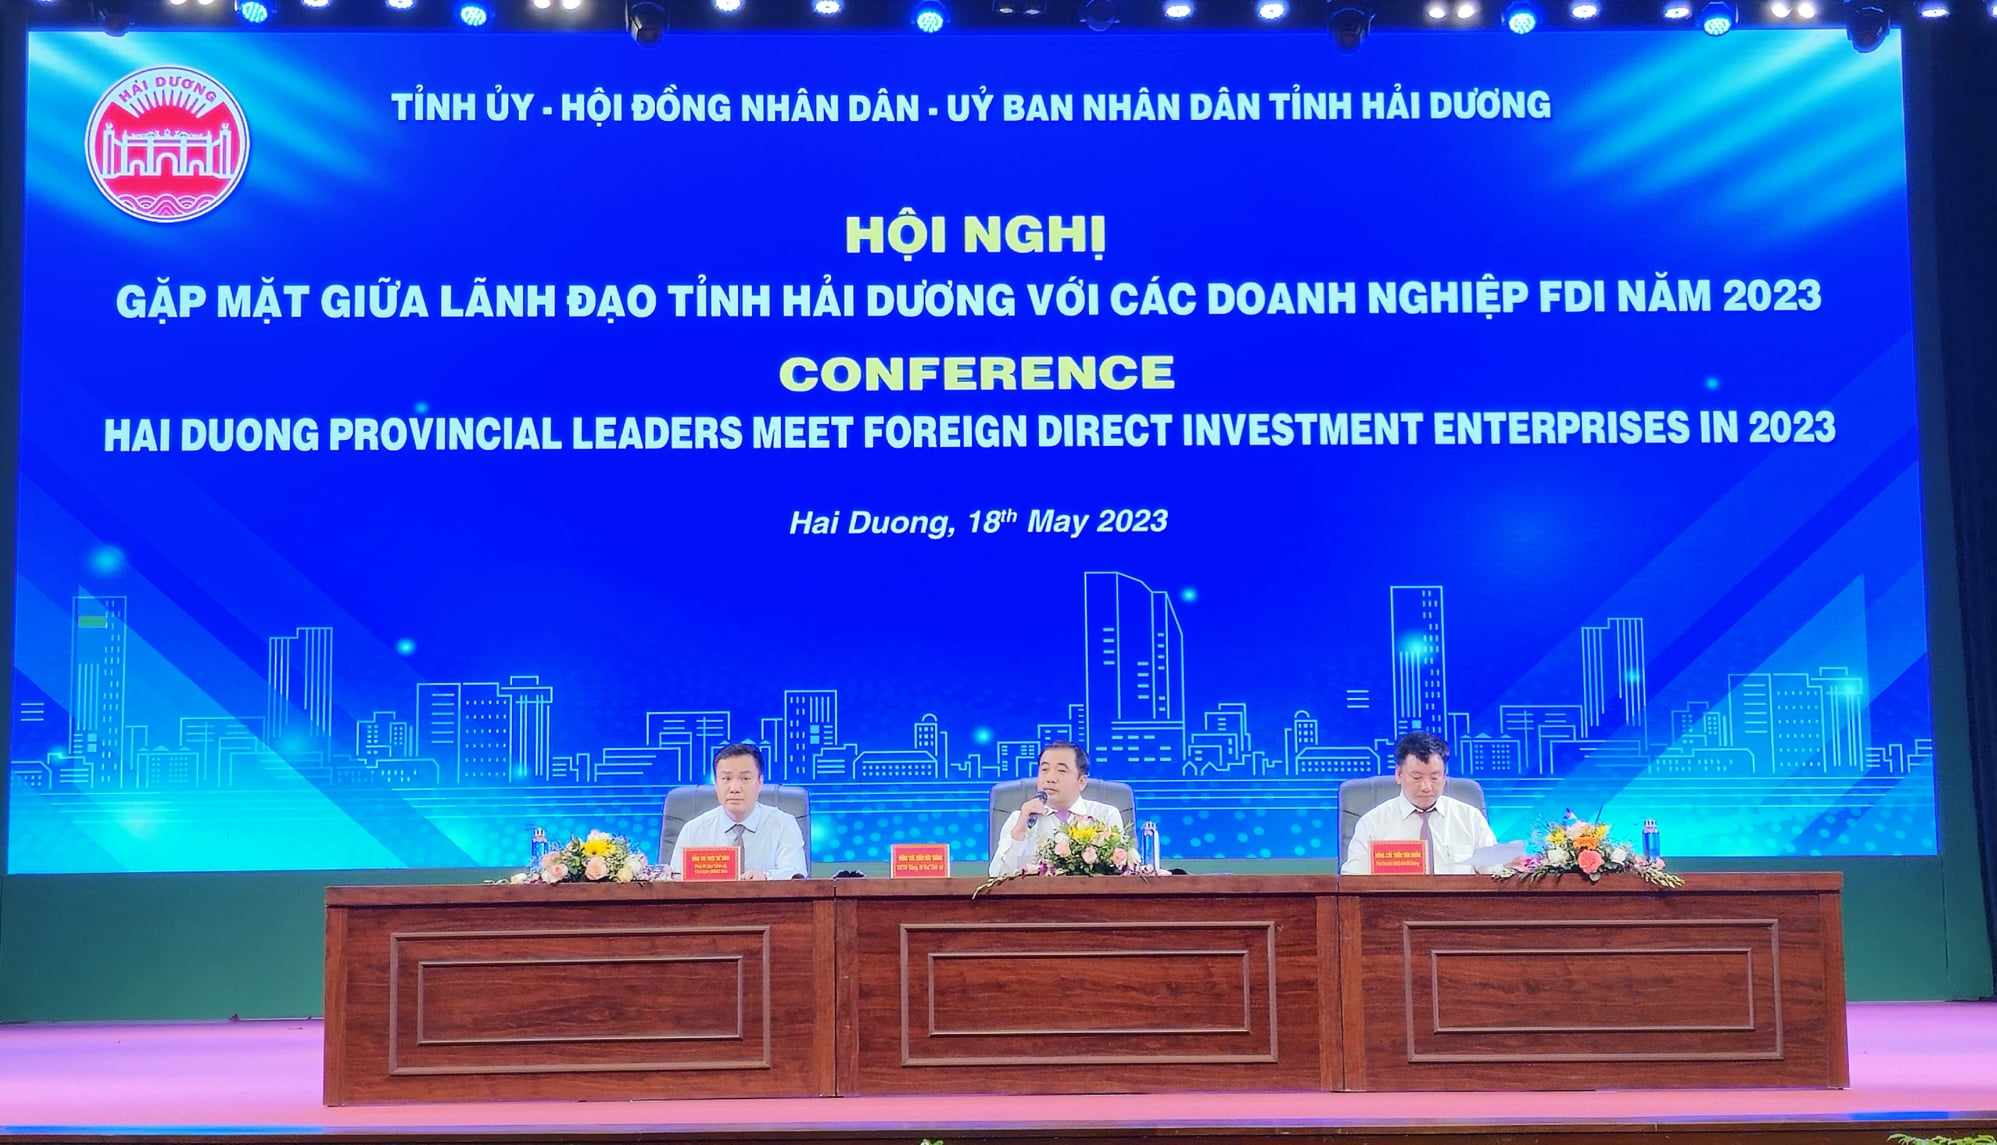 Lãnh đạo tỉnh Hải Dương đối thoại với các doanh nghiệp FDI tại hội nghị. Ảnh: Thanh Sơn